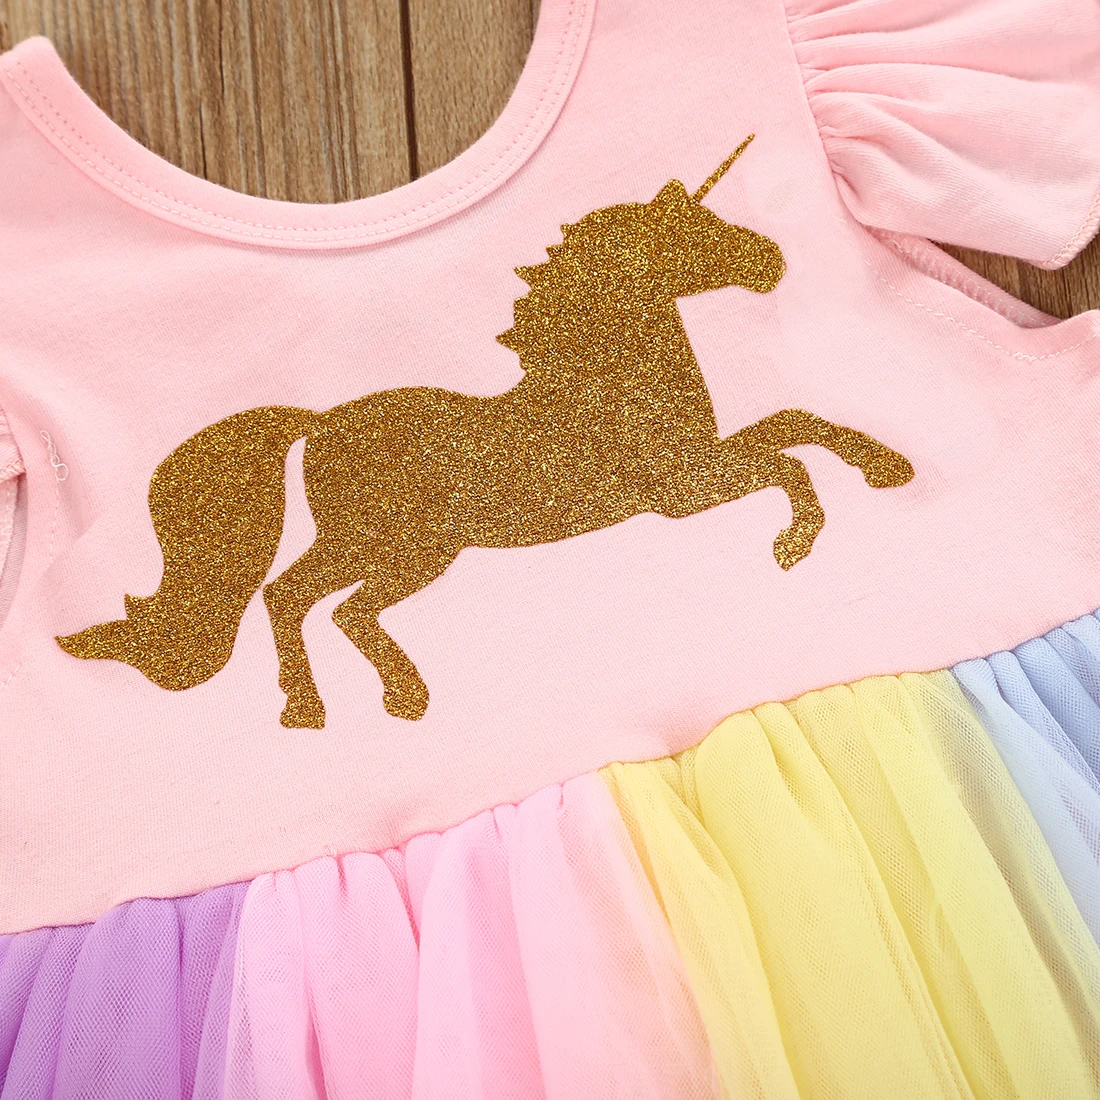 Copilul Fete Pentru Copii Unicorn Dantela Tutu Body Rochie Cu Maneci Scurte Colorate Bodysuit Dress Utilaje